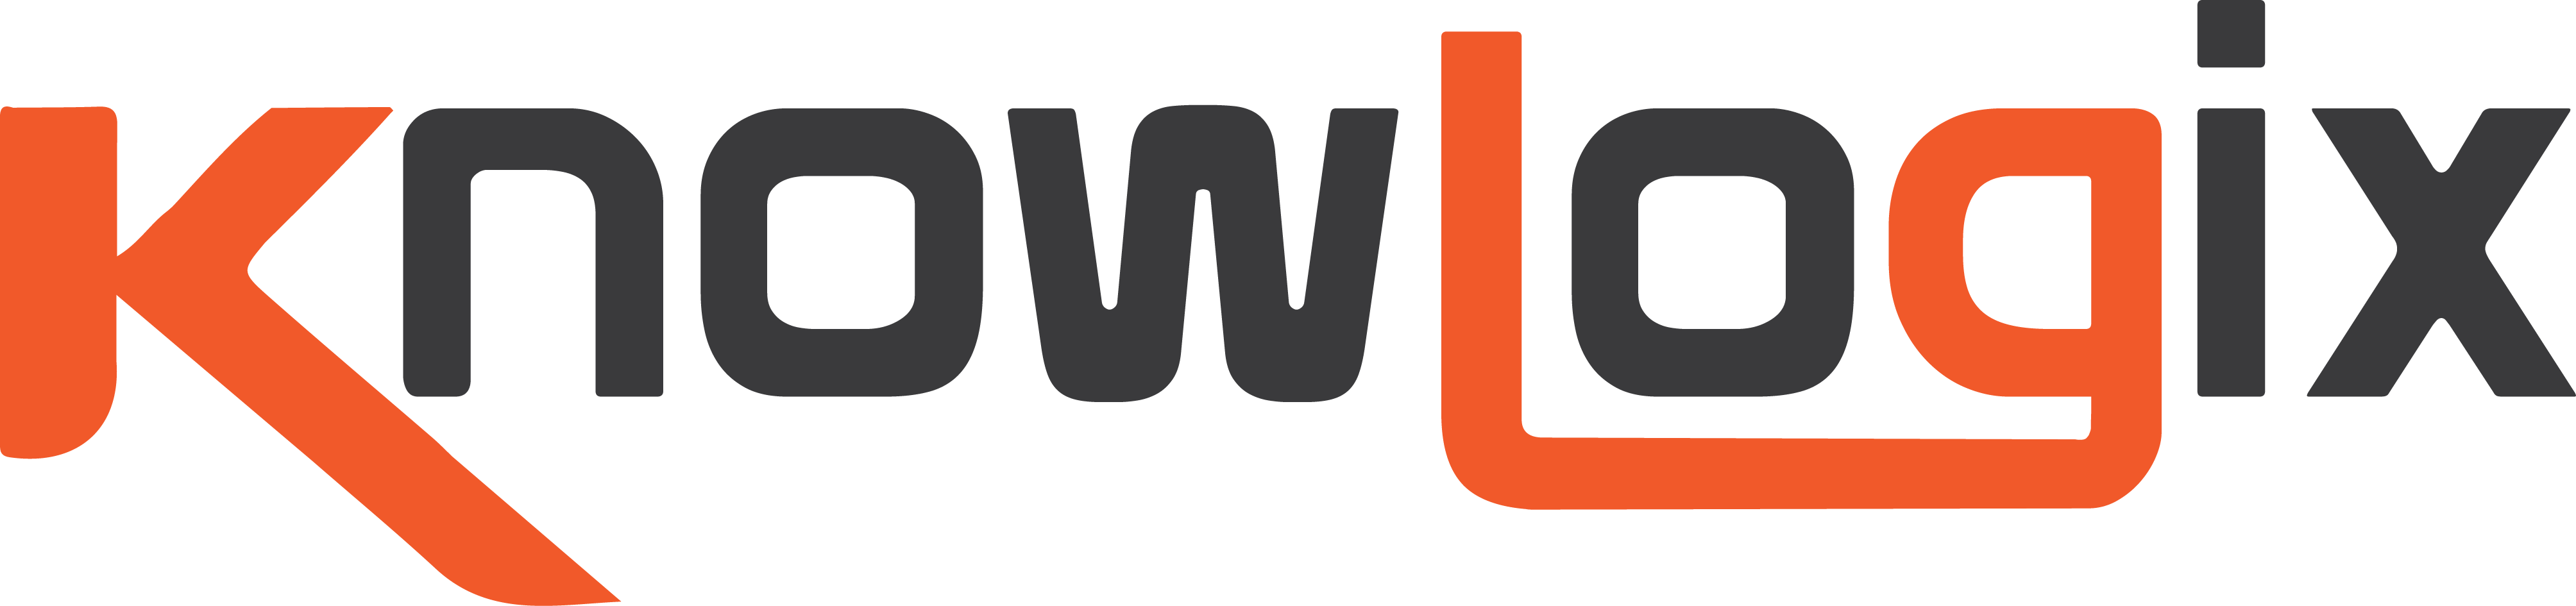 Knowlogix Logo